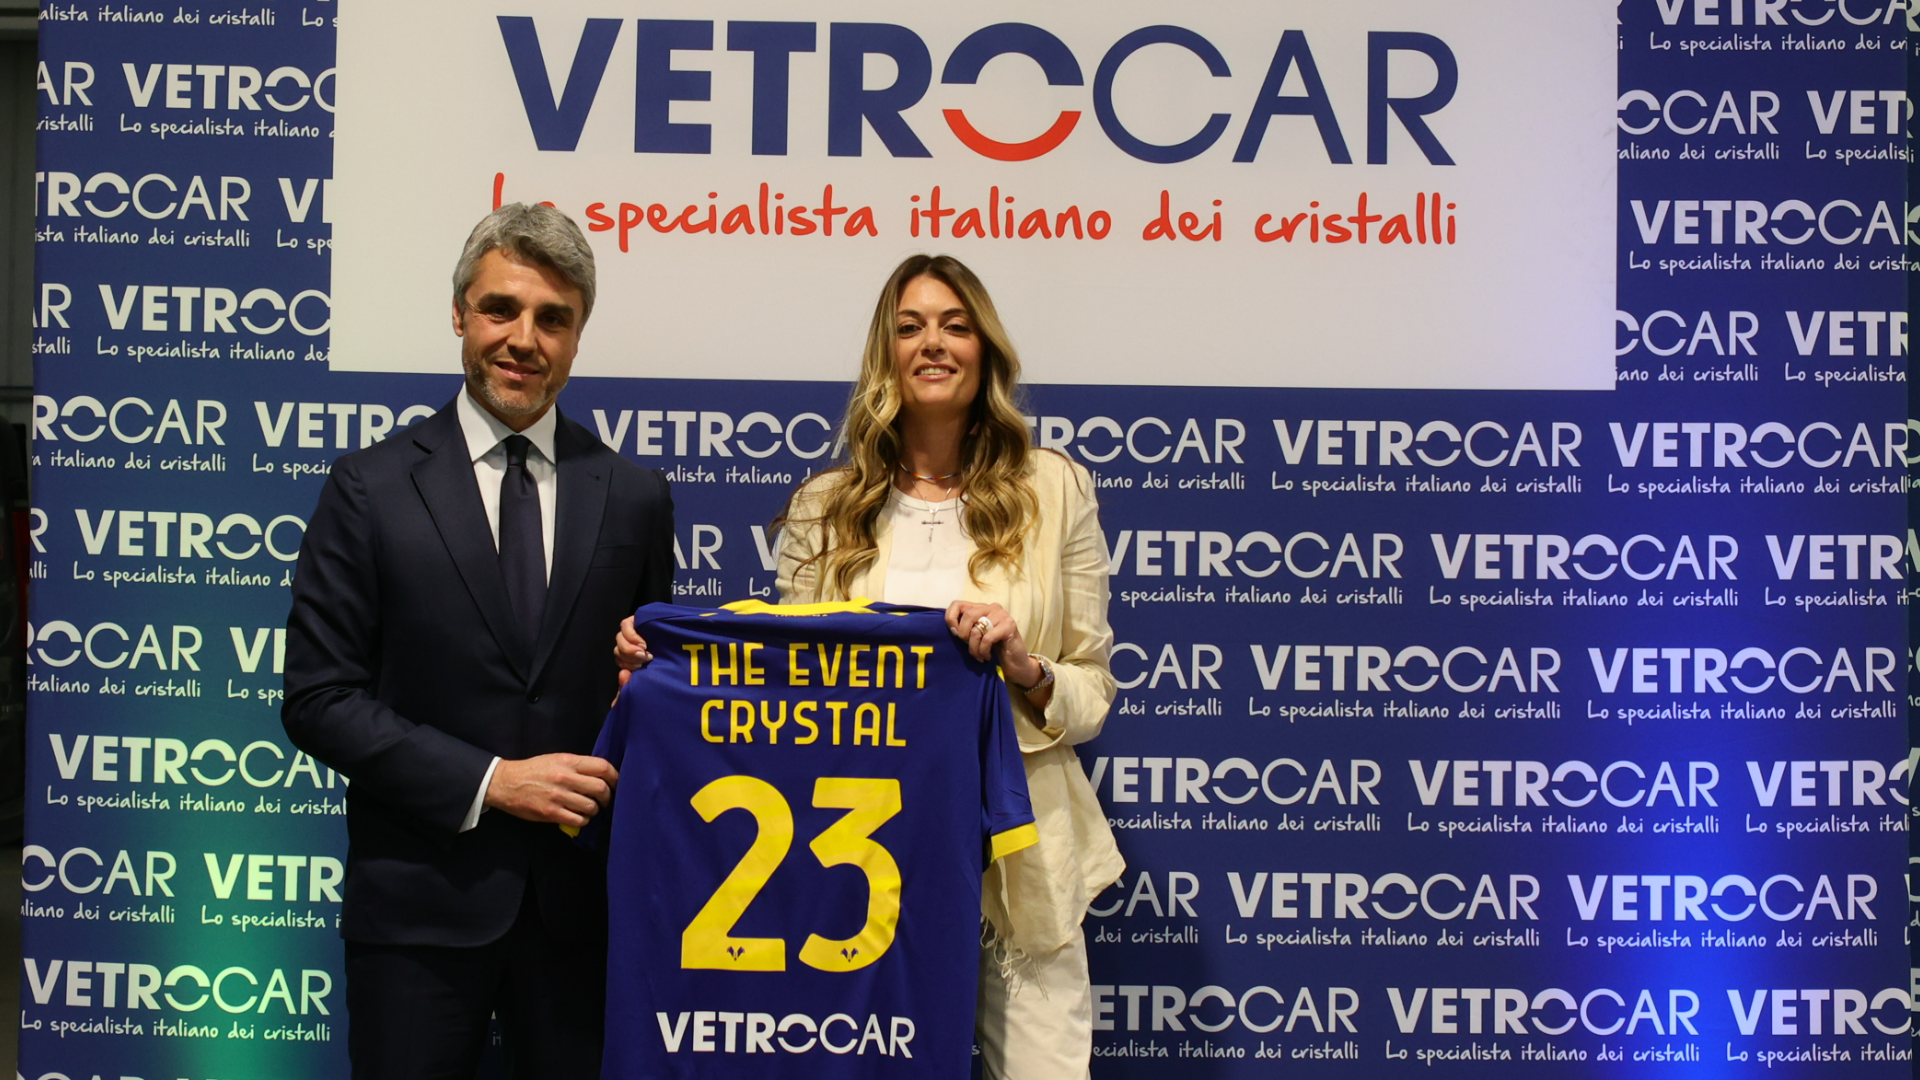 The Crystal Event, VetroCar ospita Hellas Verona nel proprio centro di Verona